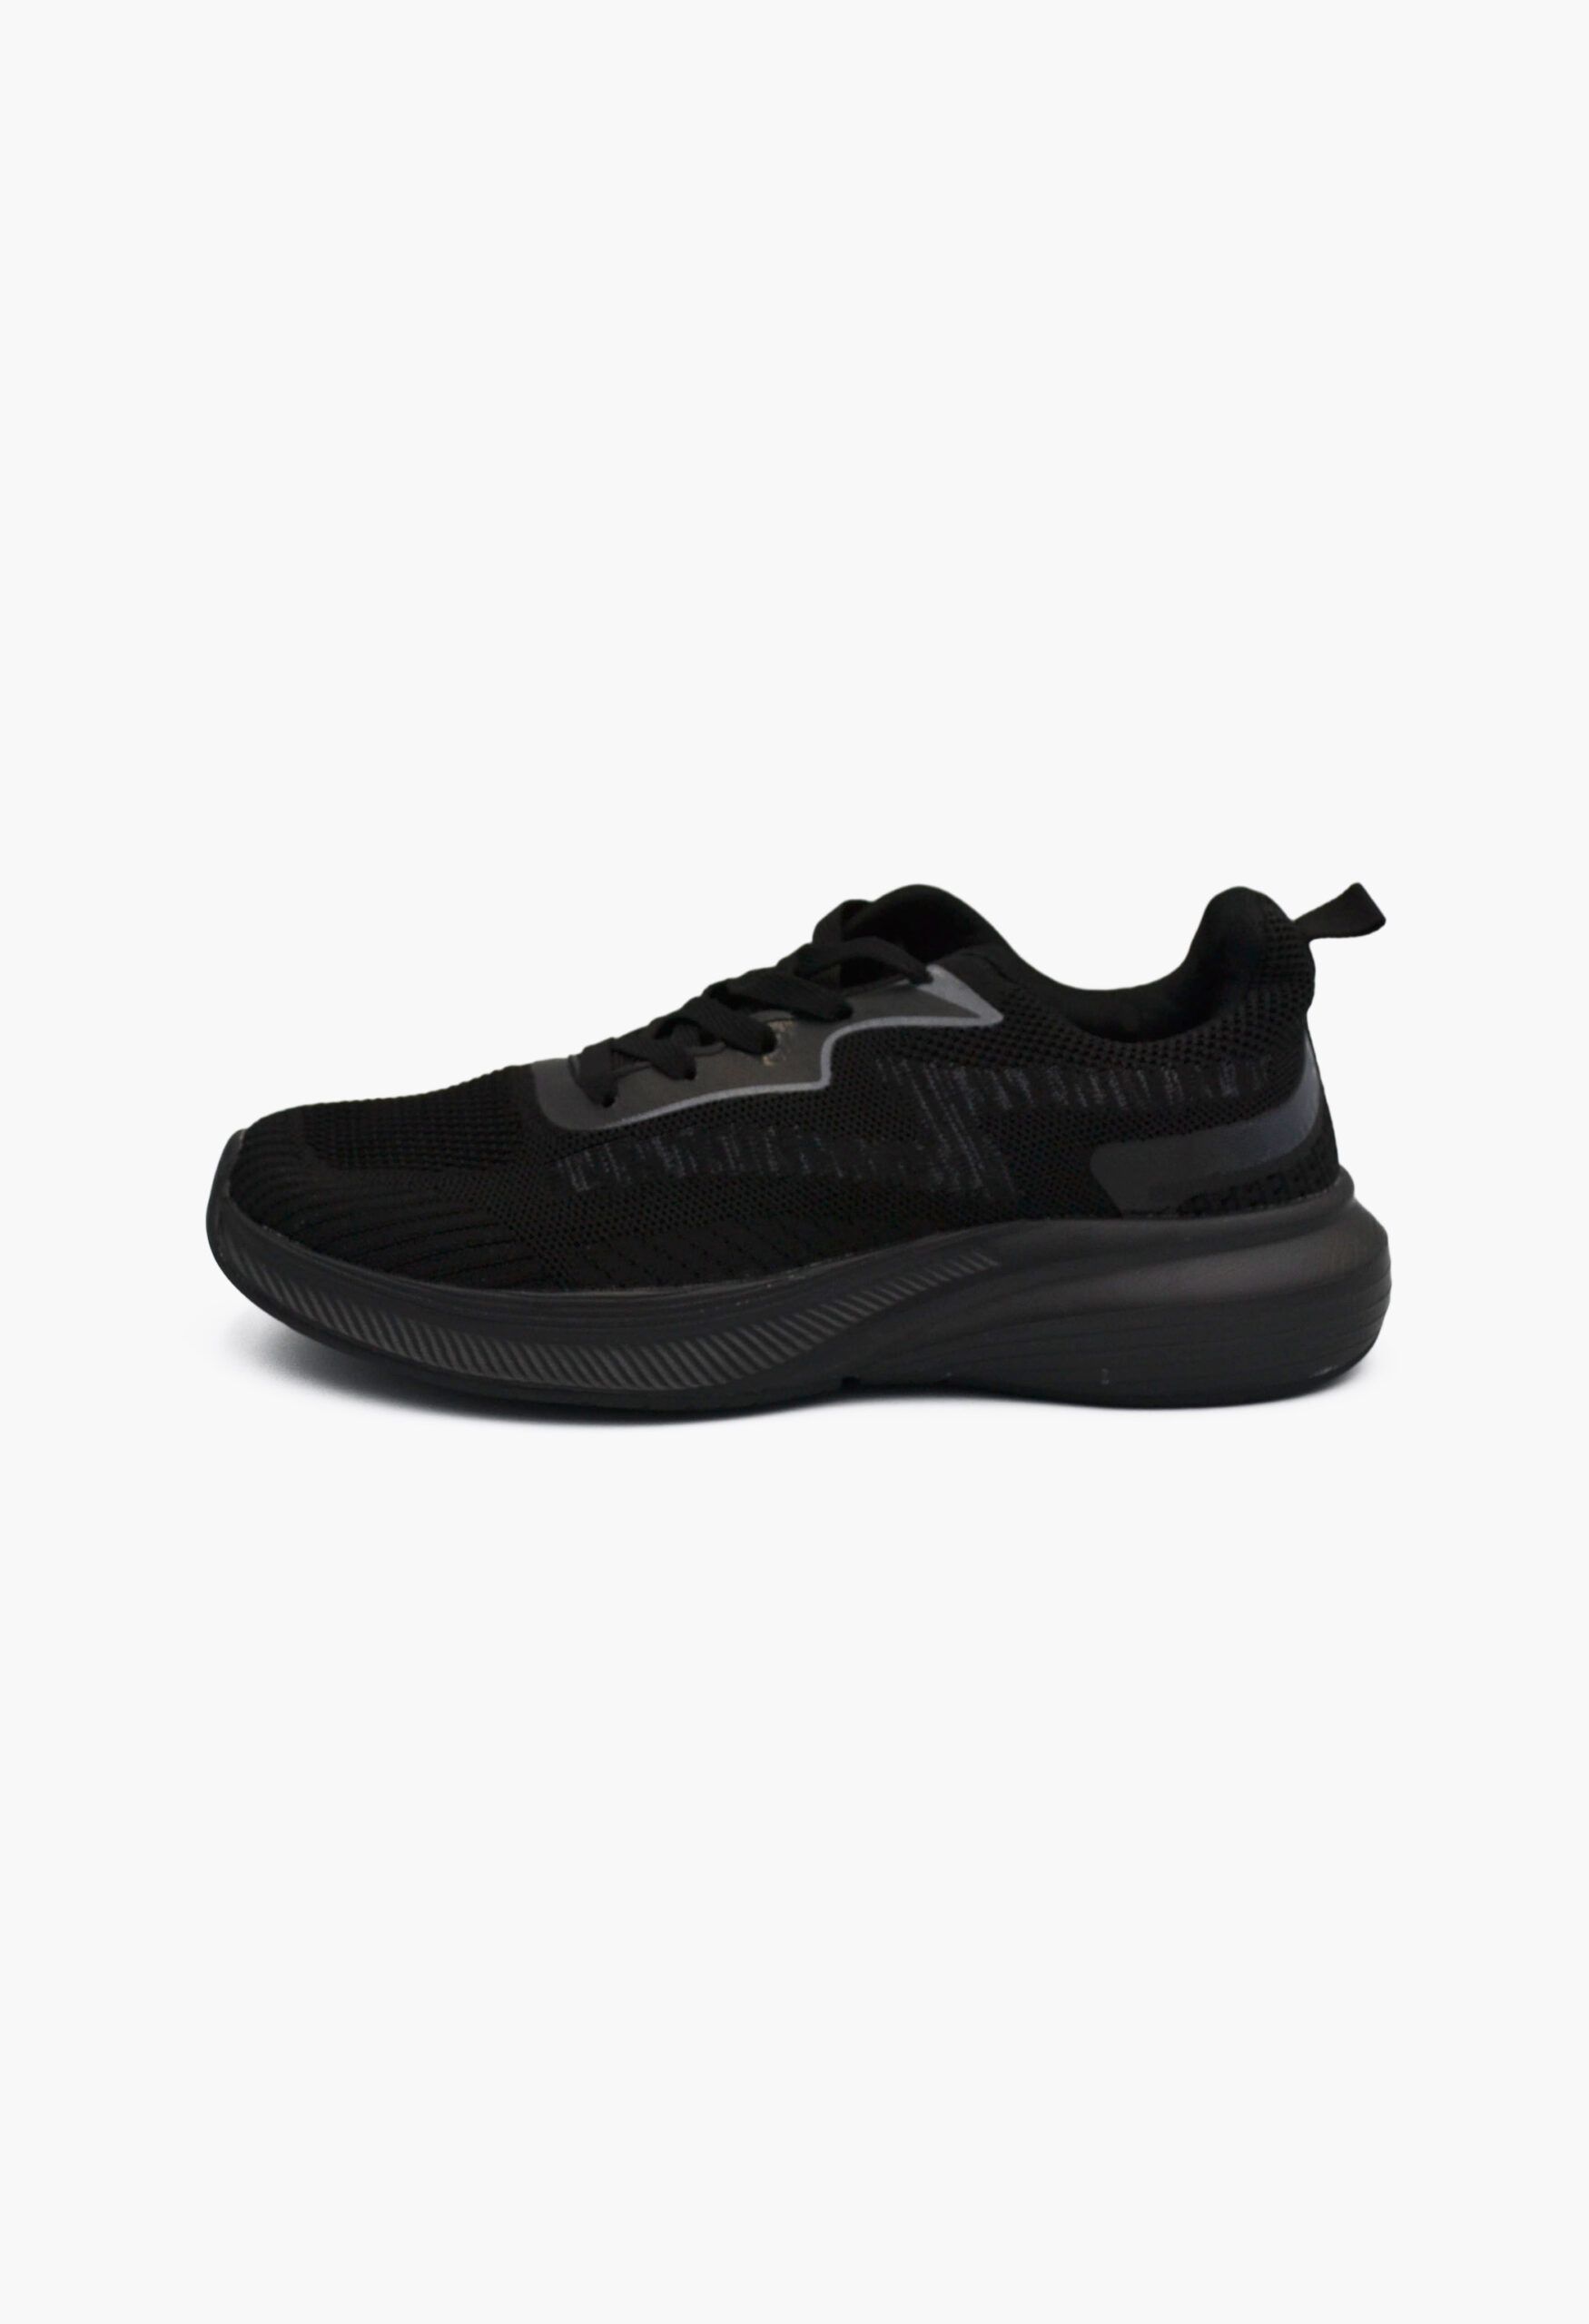 Ανδρικά Αθλητικά Παπούτσια για Τρέξιμο Μαύρο / A-35-black/dark-grey ΑΝΔΡΙΚΑ ΠΑΠΟΥΤΣΙΑ joya.gr